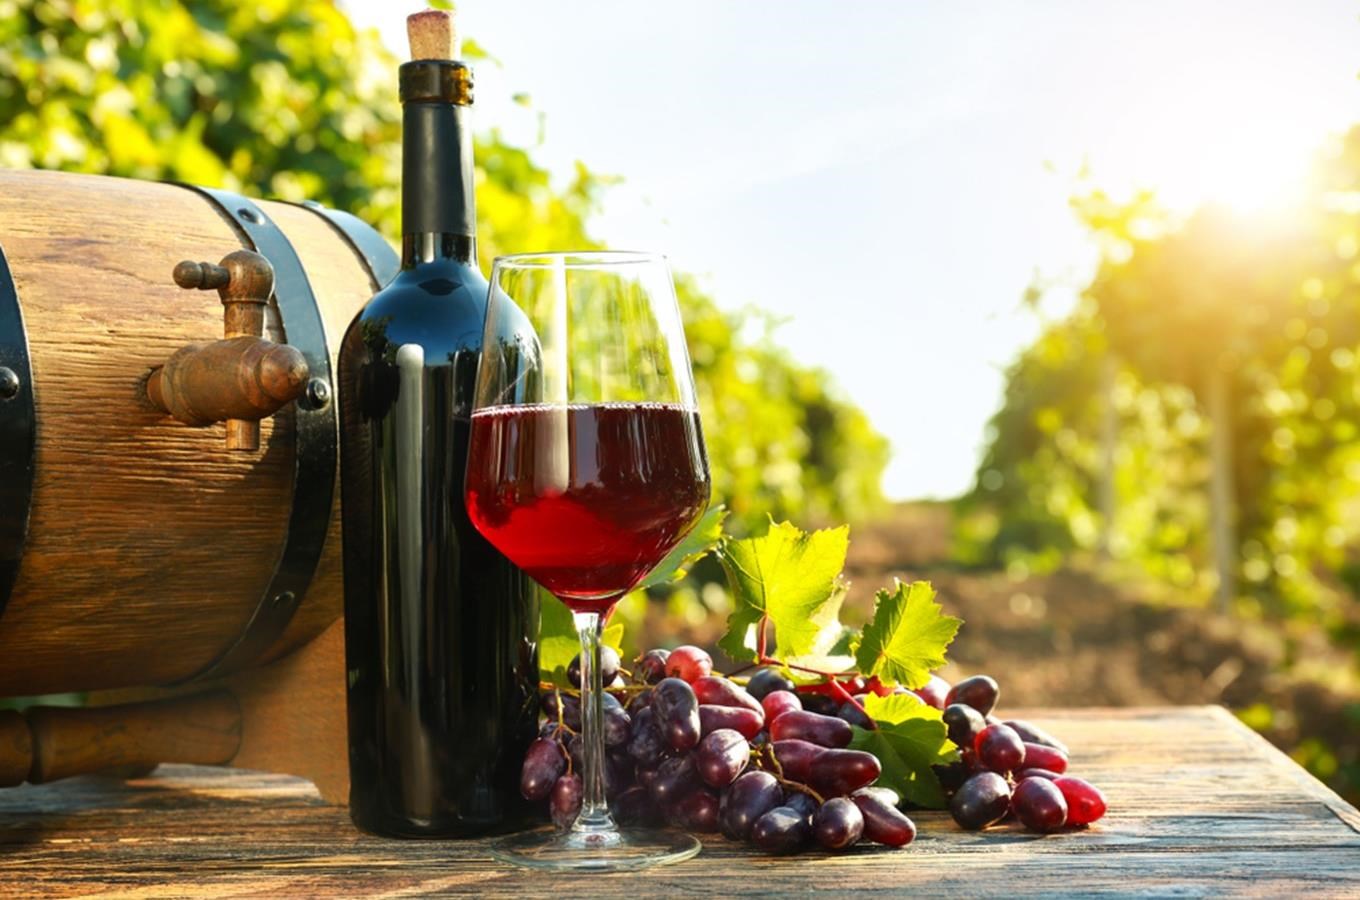 Putování Krajem vína vás zavede na vinařské stezky i k otevřeným sklepům